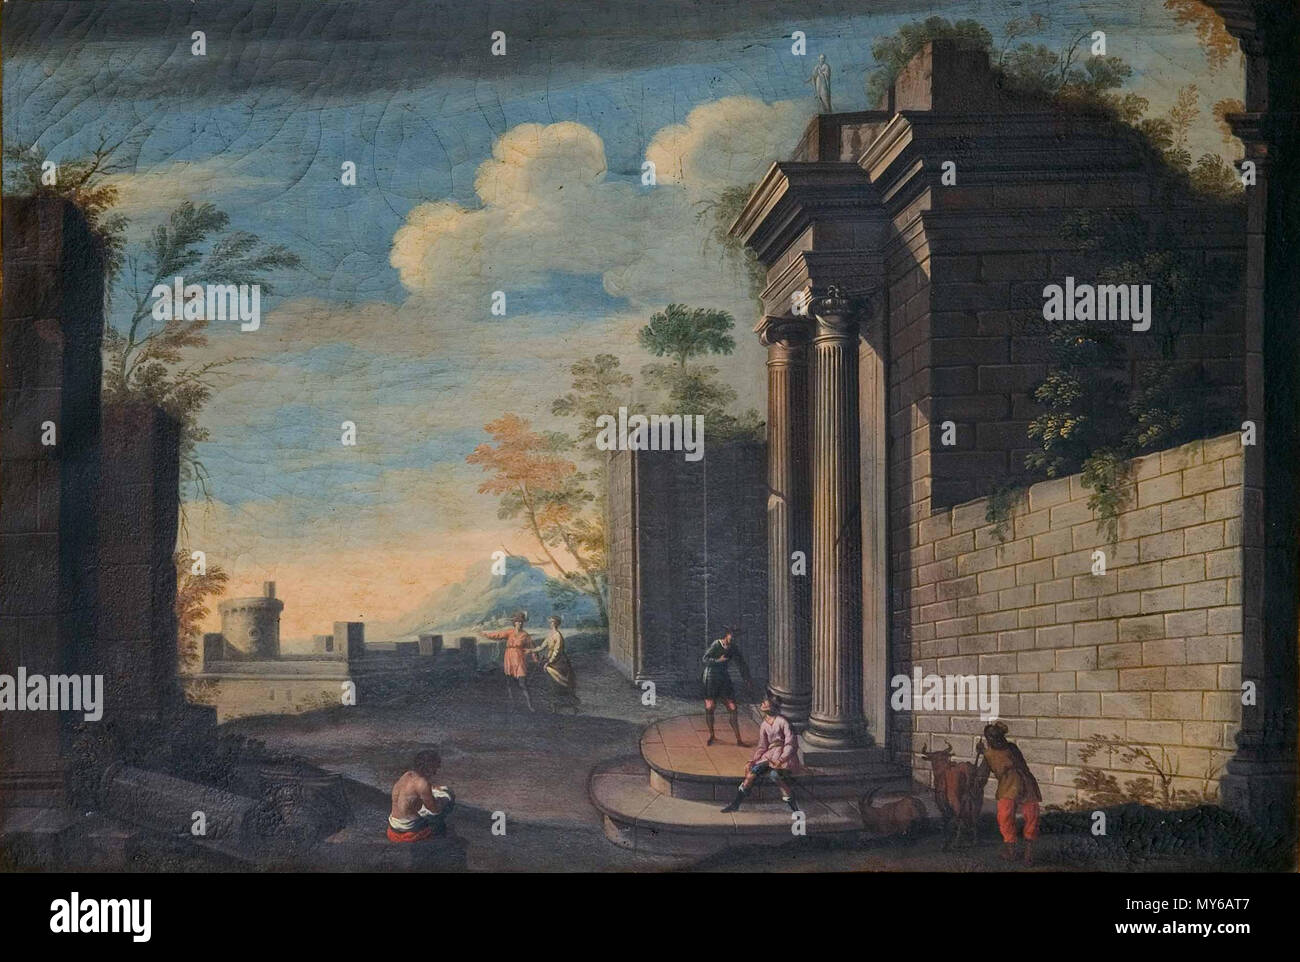 . Español: Arquitectura clásica, óleo sobre lienzo, 78 x 116 cm, colección particular. circa 1700. Pedro Onofre Cotto 125 Cotto-arquitectura Stock Photo